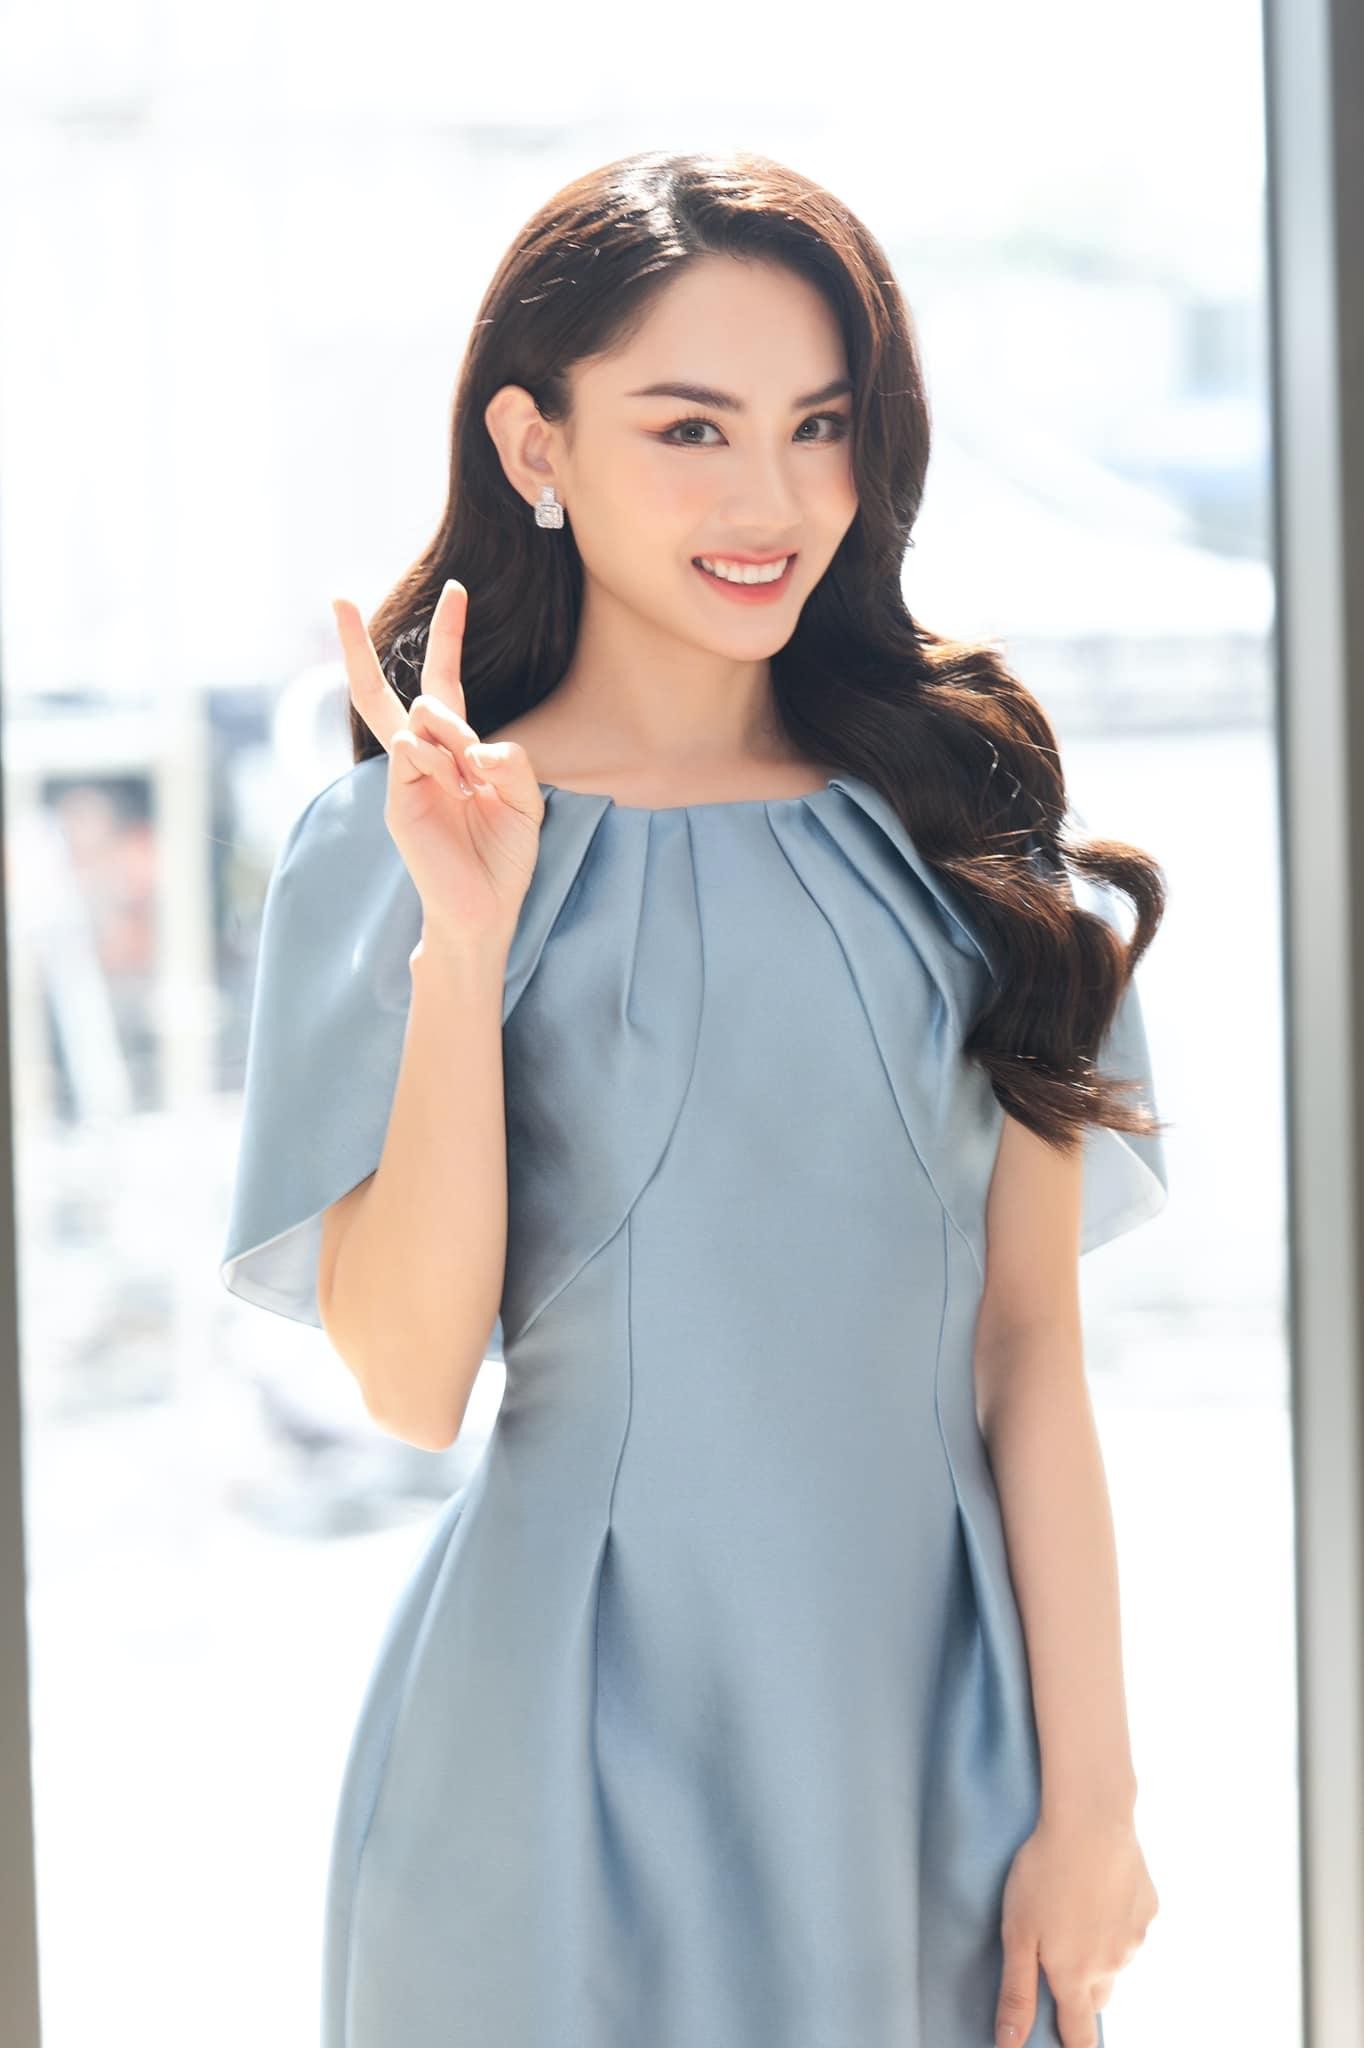 Hoa hậu diện đồ công sở: Mai Phương ngọt ngào, Thùy Tiên cá tính còn Ngọc Châu "nổi loạn" ảnh 18